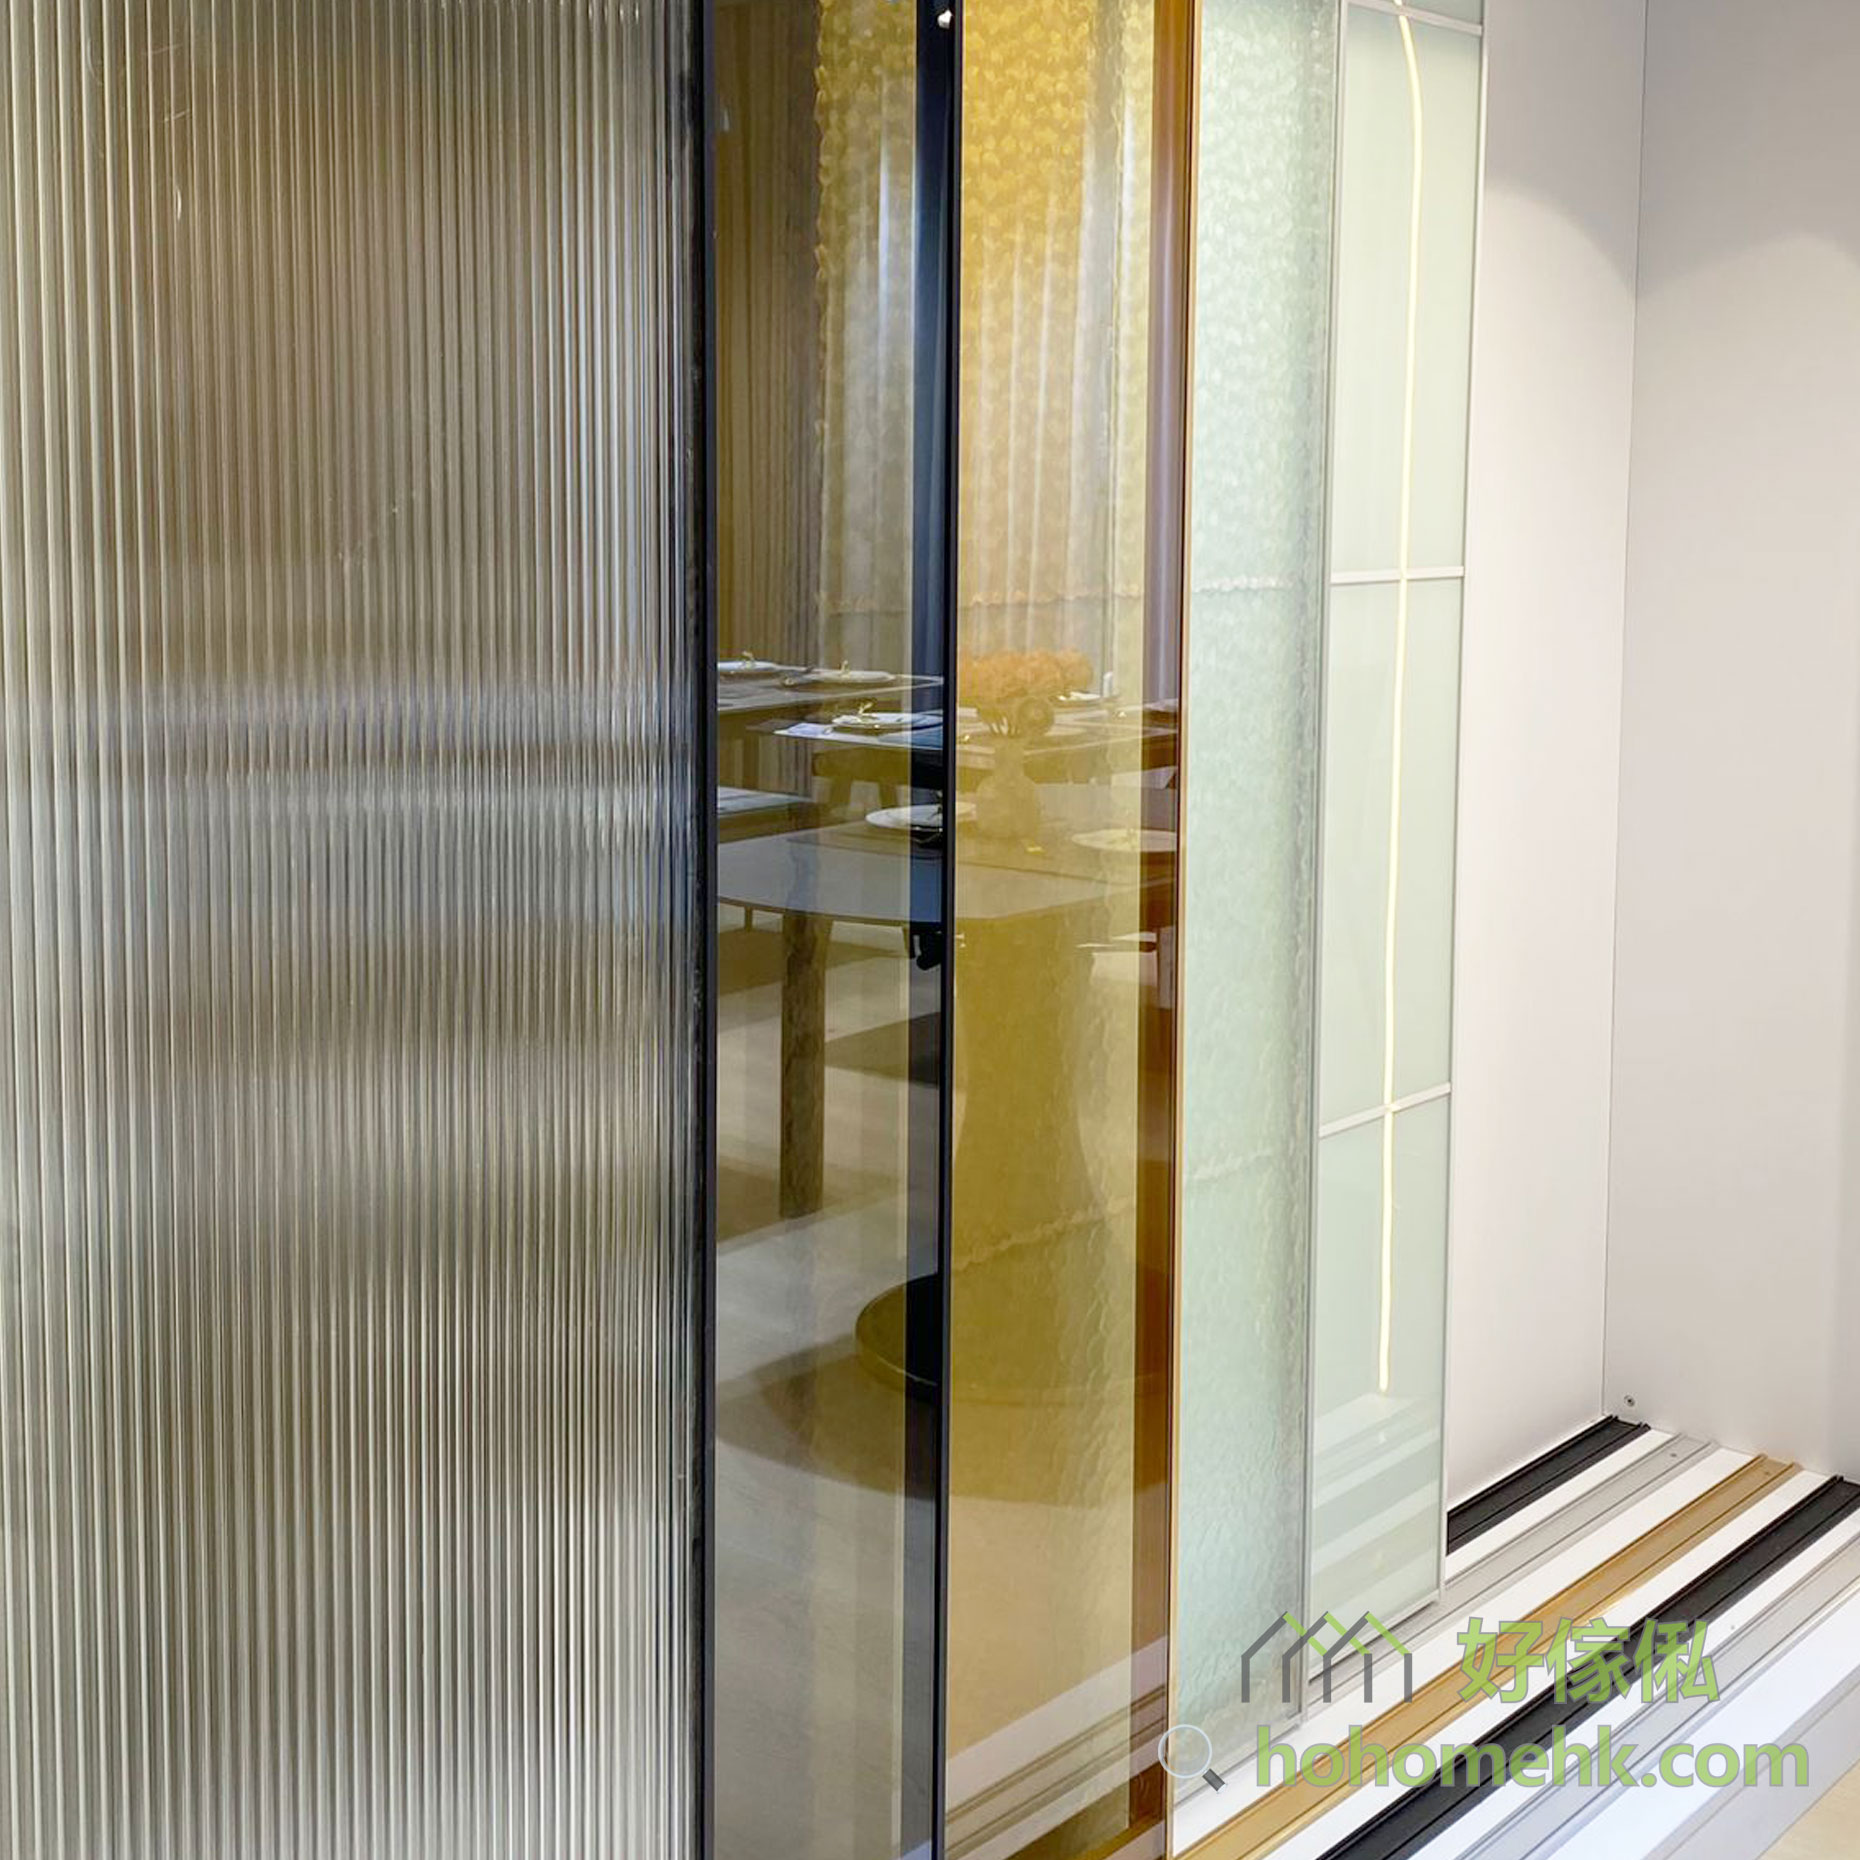 石門12N陳列室有多款玻璃趟門陳列，歡迎上來參觀及查詢有關訂造玻璃趟門或趟門間房的設計及報價。